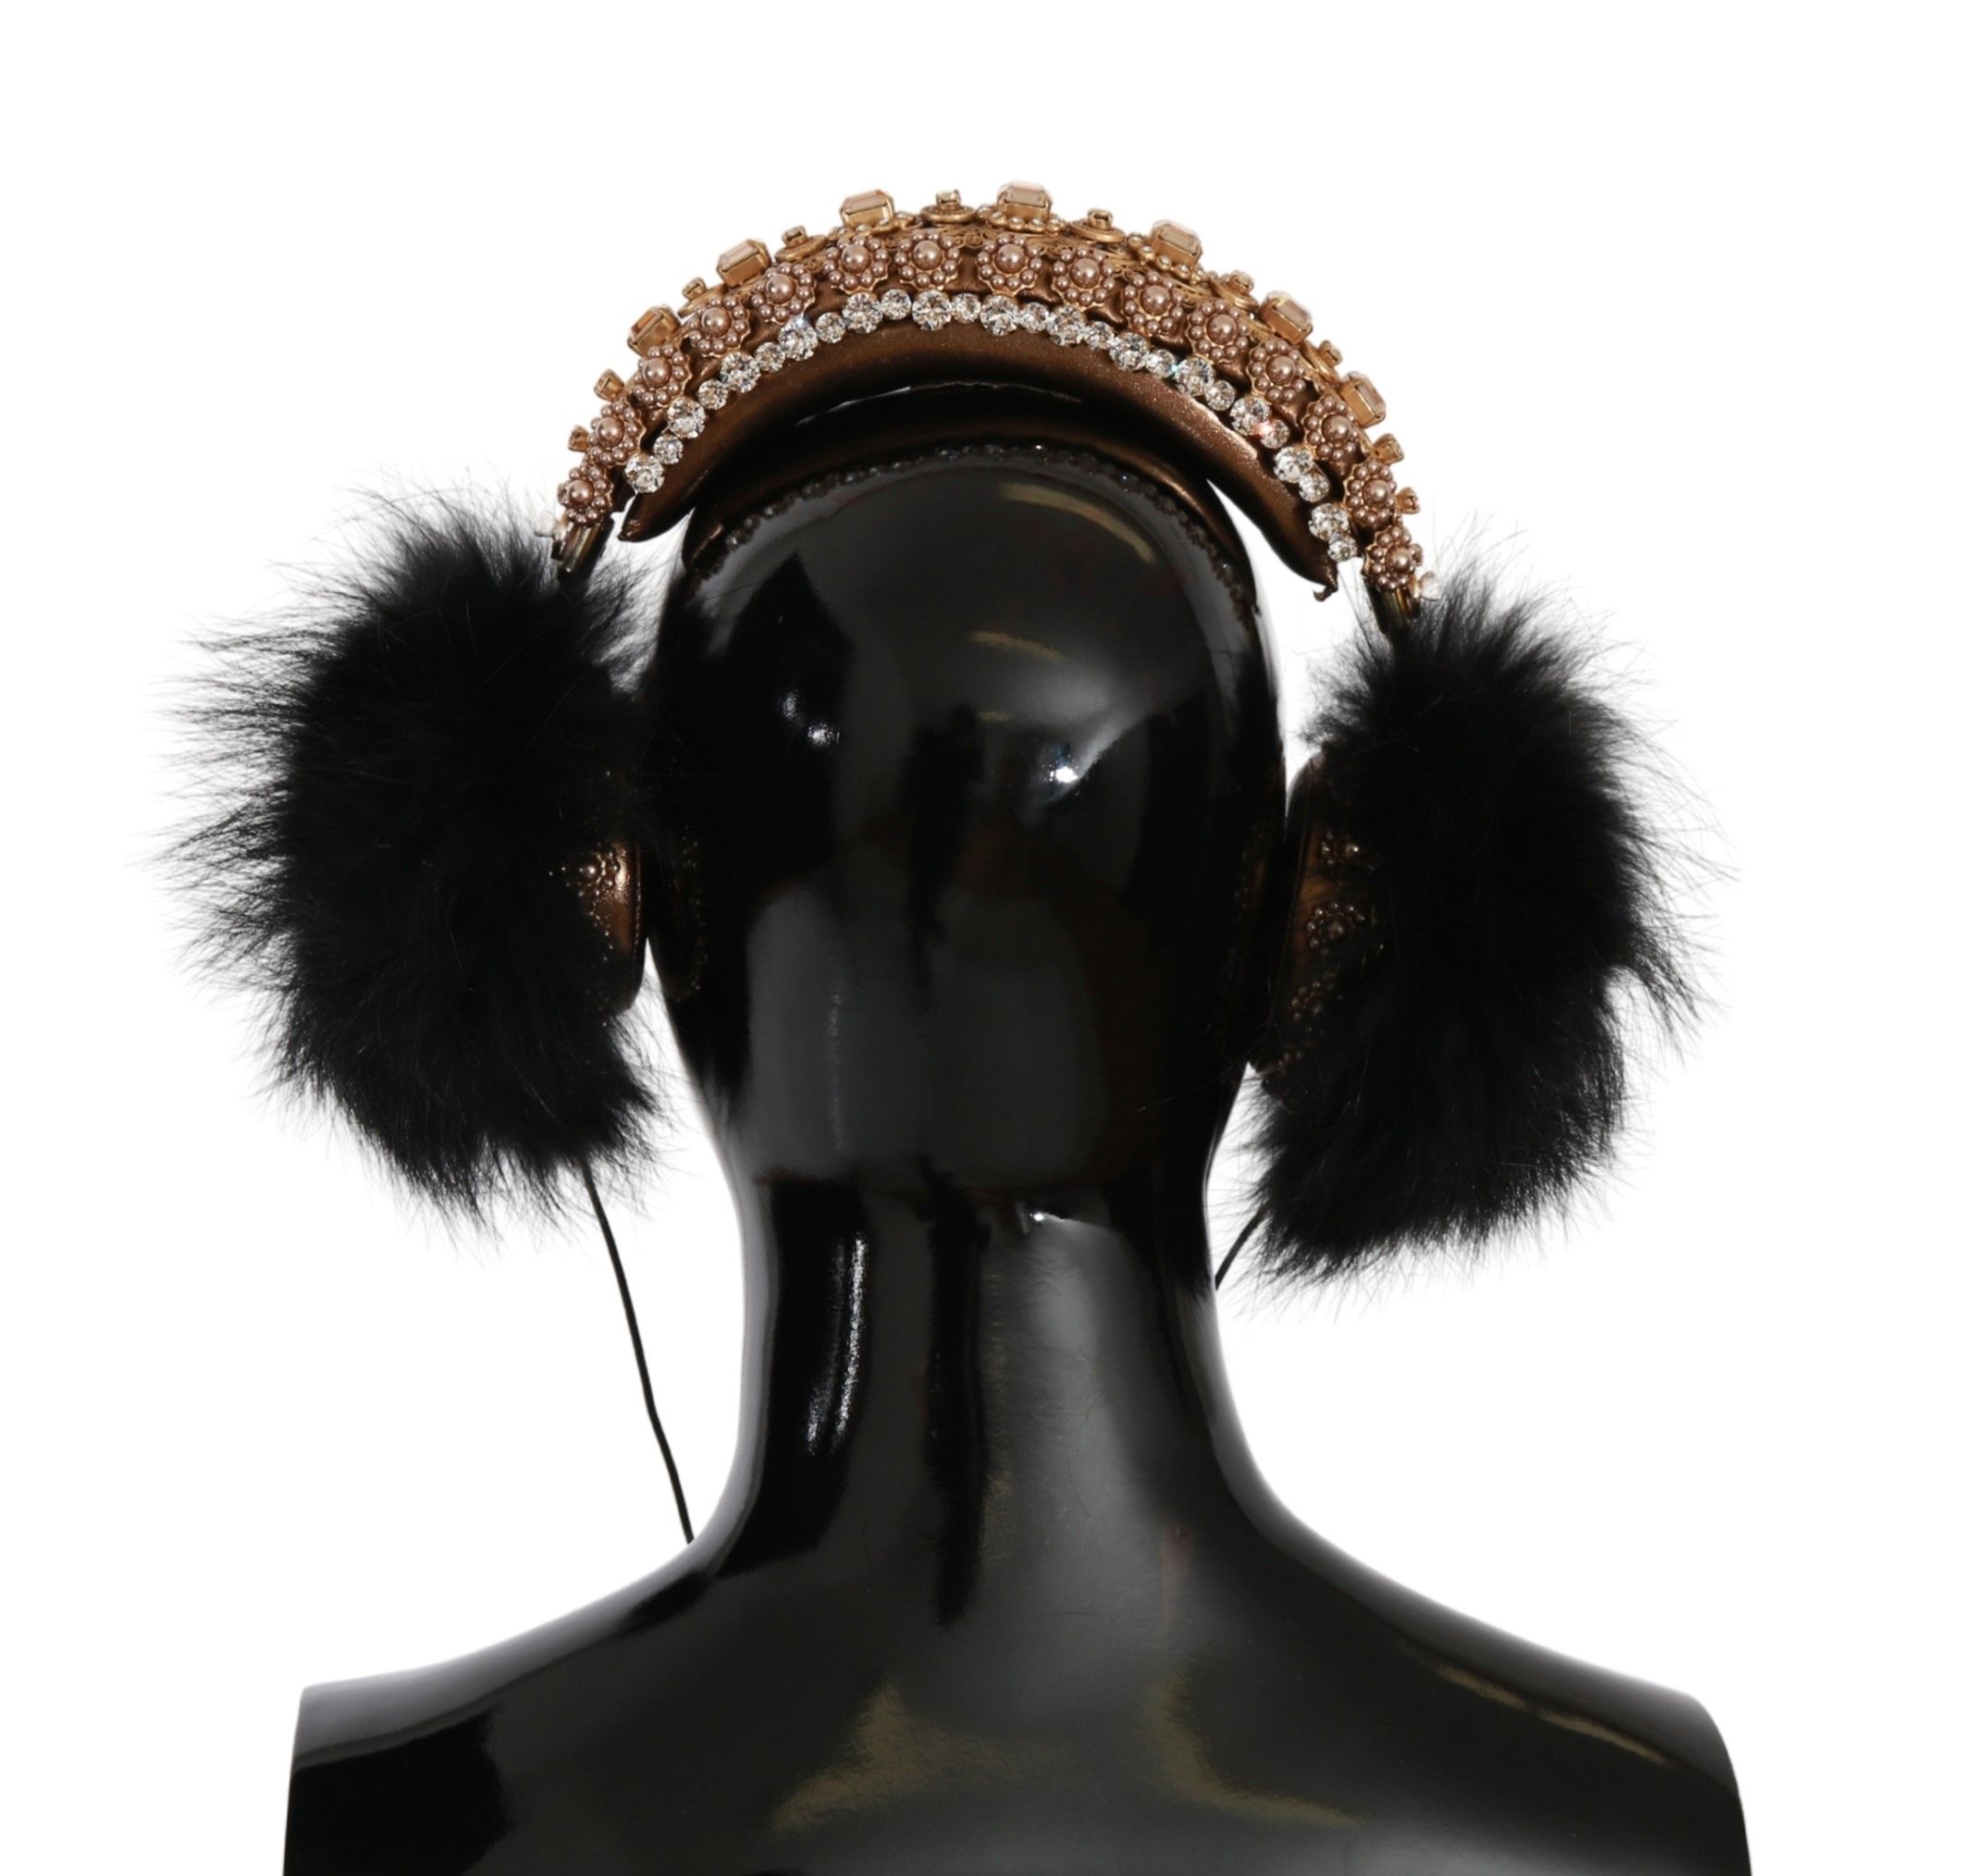 Crystal Fur Headset Audio Headphones